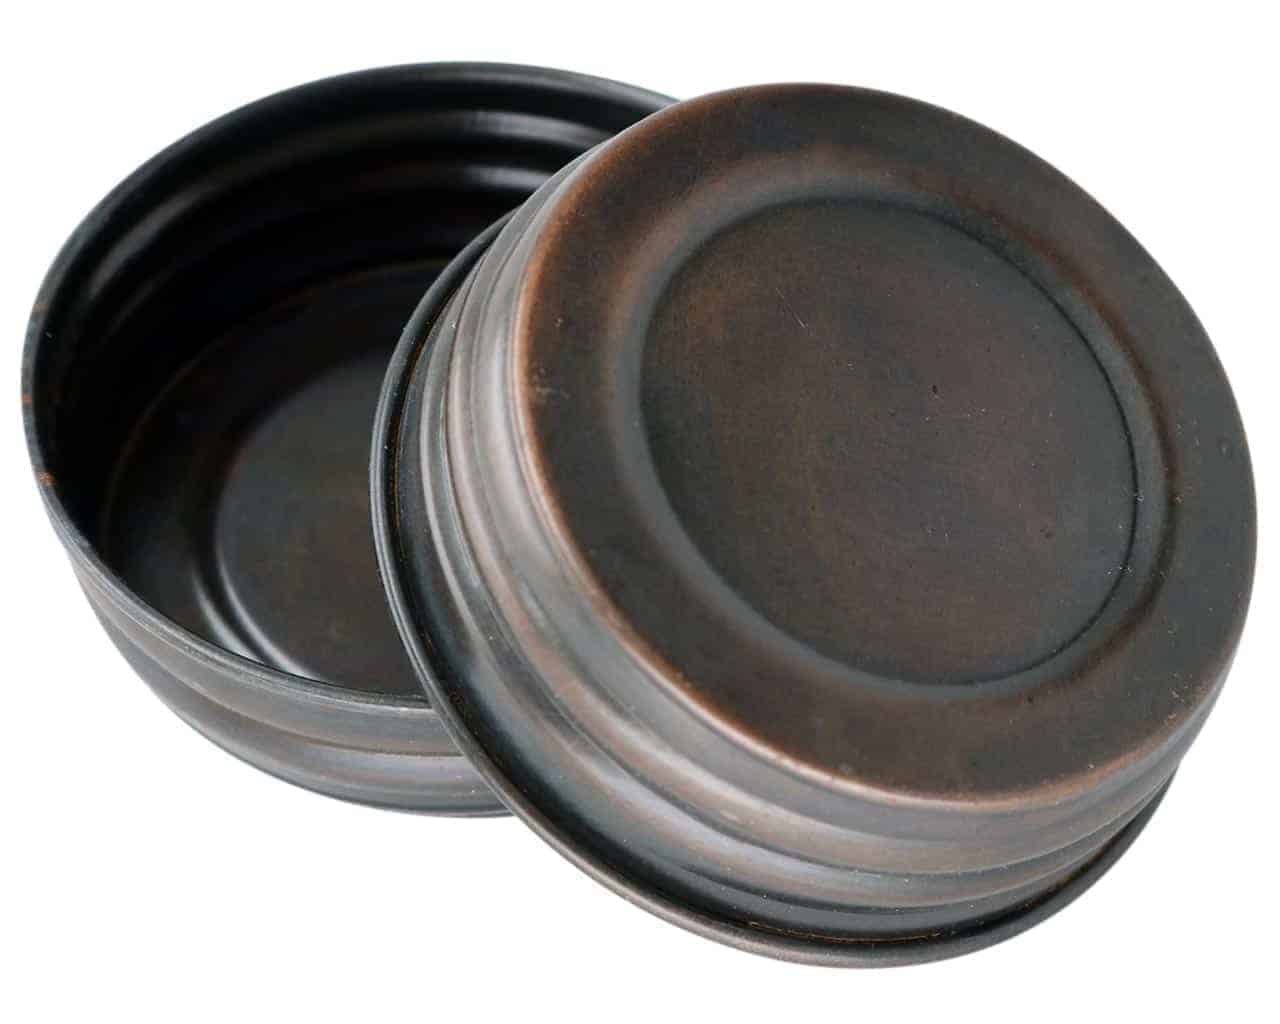 Oil Rubbed Bronze Vintage Reproduction Mason Jar Lids 4 Pack